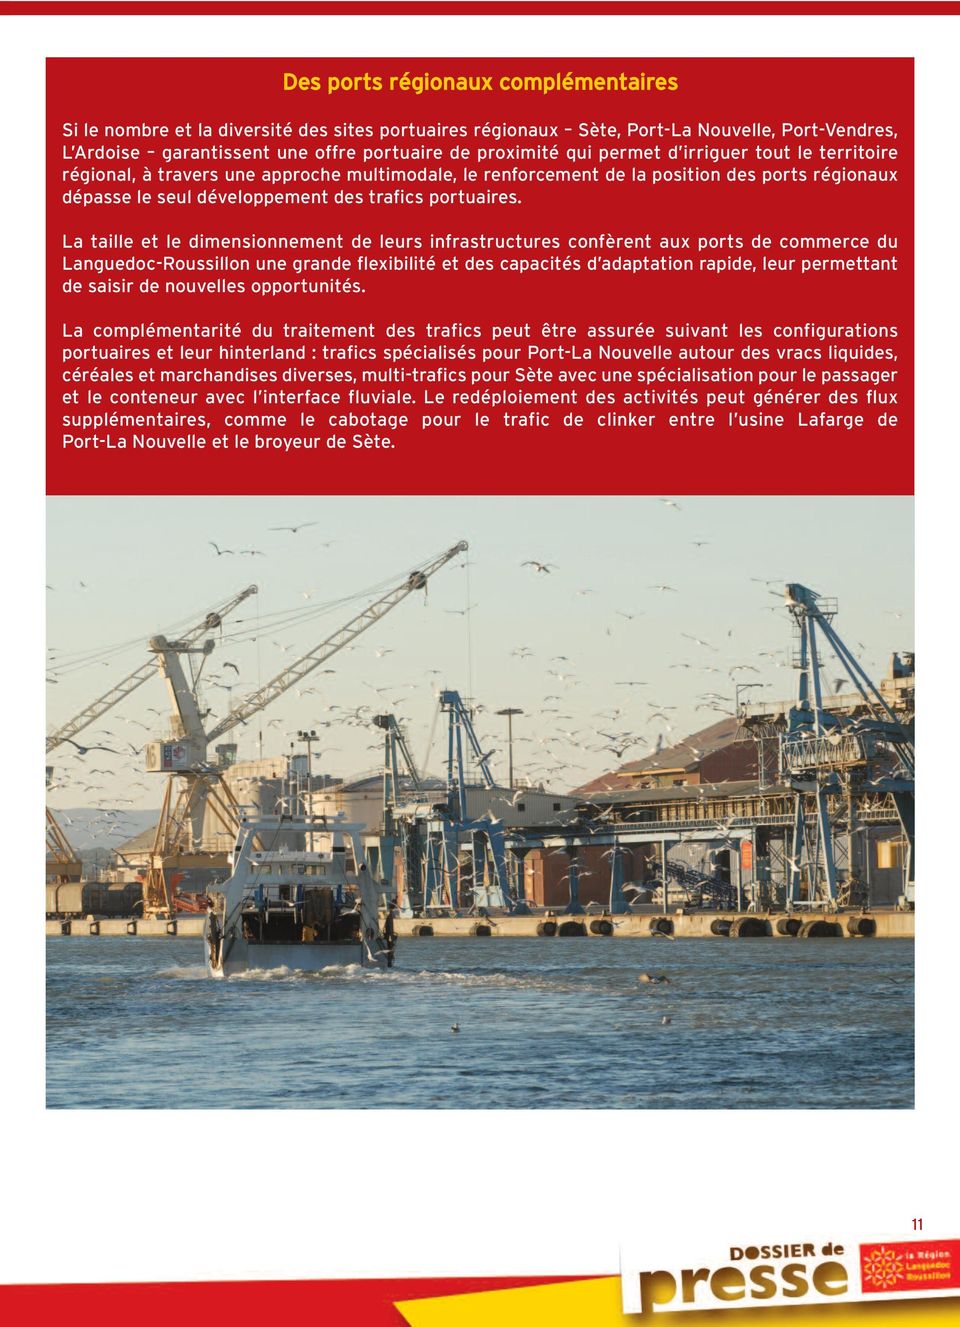 La taille et le dimensionnement de leurs infrastructures confèrent aux ports de commerce du Languedoc-Roussillon une grande flexibilité et des capacités d adaptation rapide, leur permettant de saisir